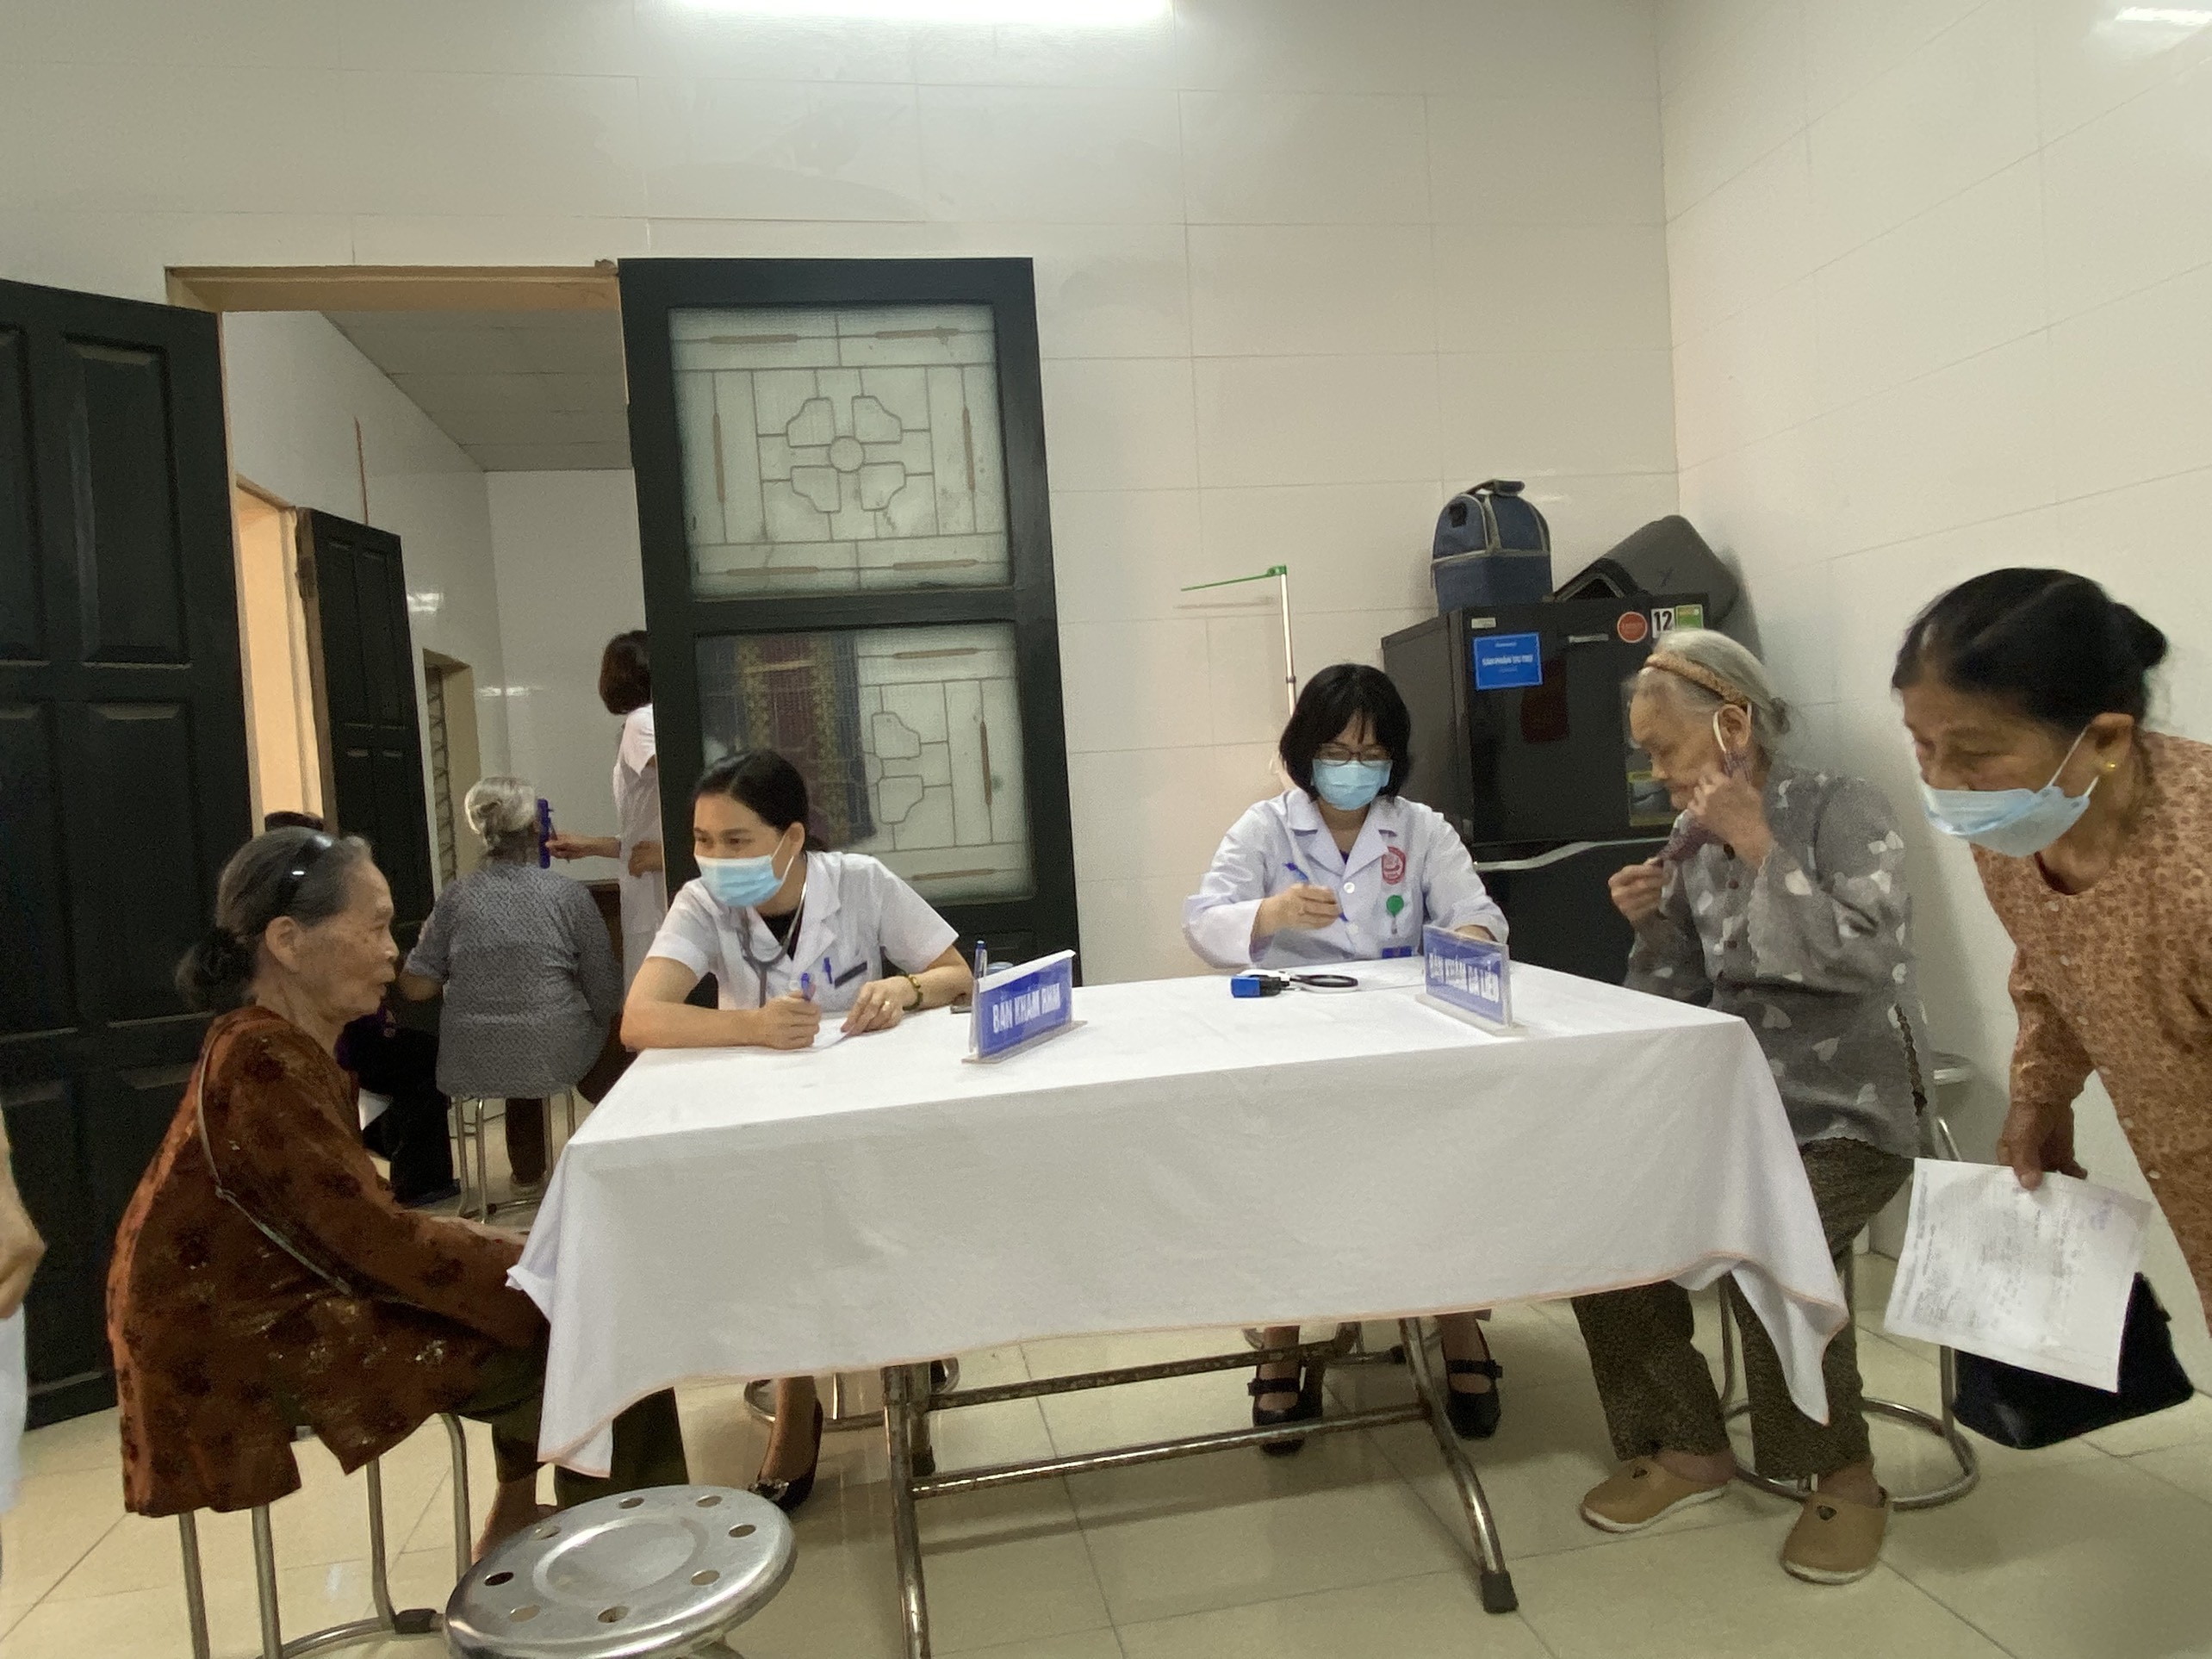 Trung tâm Kiểm soát bệnh tật: Khám bệnh miễn phí cho bệnh nhân gia đình chính sách tại phường Thọ...|https://kiemsoatbenhtatbacgiang.vn/vi_VN/chi-tiet-tin-tuc/-/asset_publisher/M0UUAFstbTMq/content/trung-tam-kiem-soat-benh-tat-kham-benh-mien-phi-cho-benh-nhan-gia-inh-chinh-sach-tai-phuong-tho-xuong